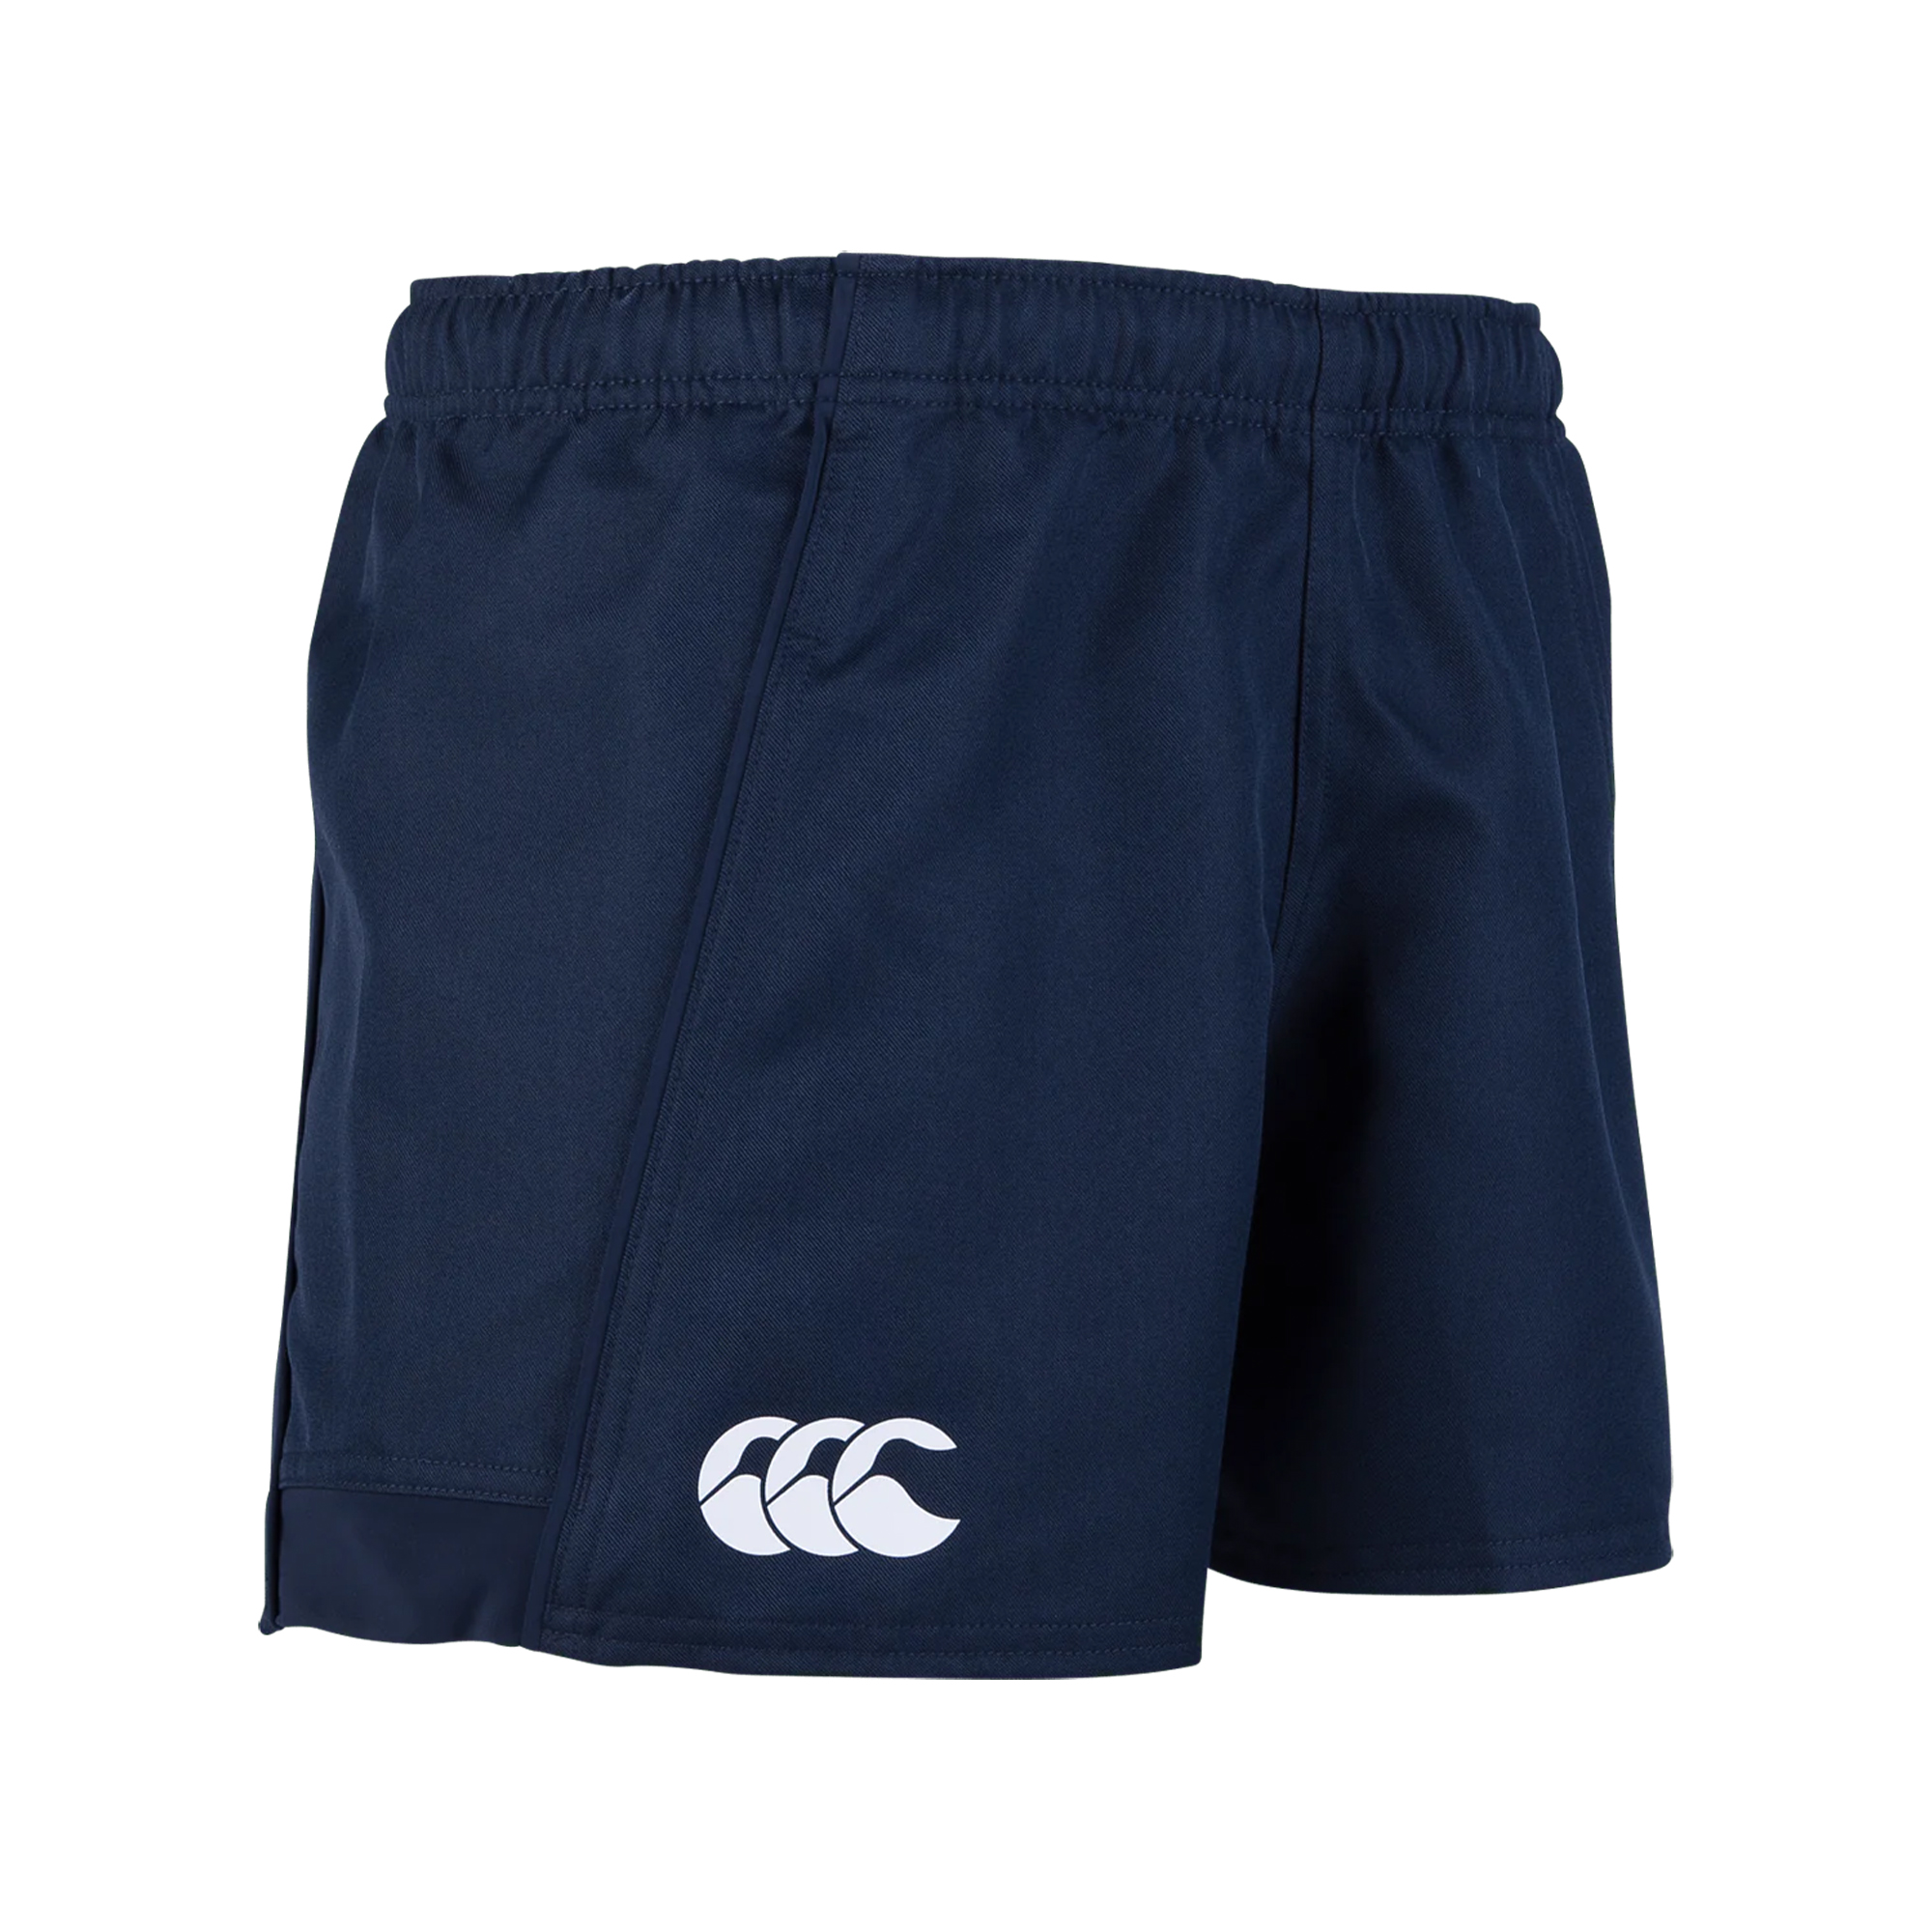 Pantalones Cortos De Deportes Elásticos Modelo Advantage Canterbury  MKP